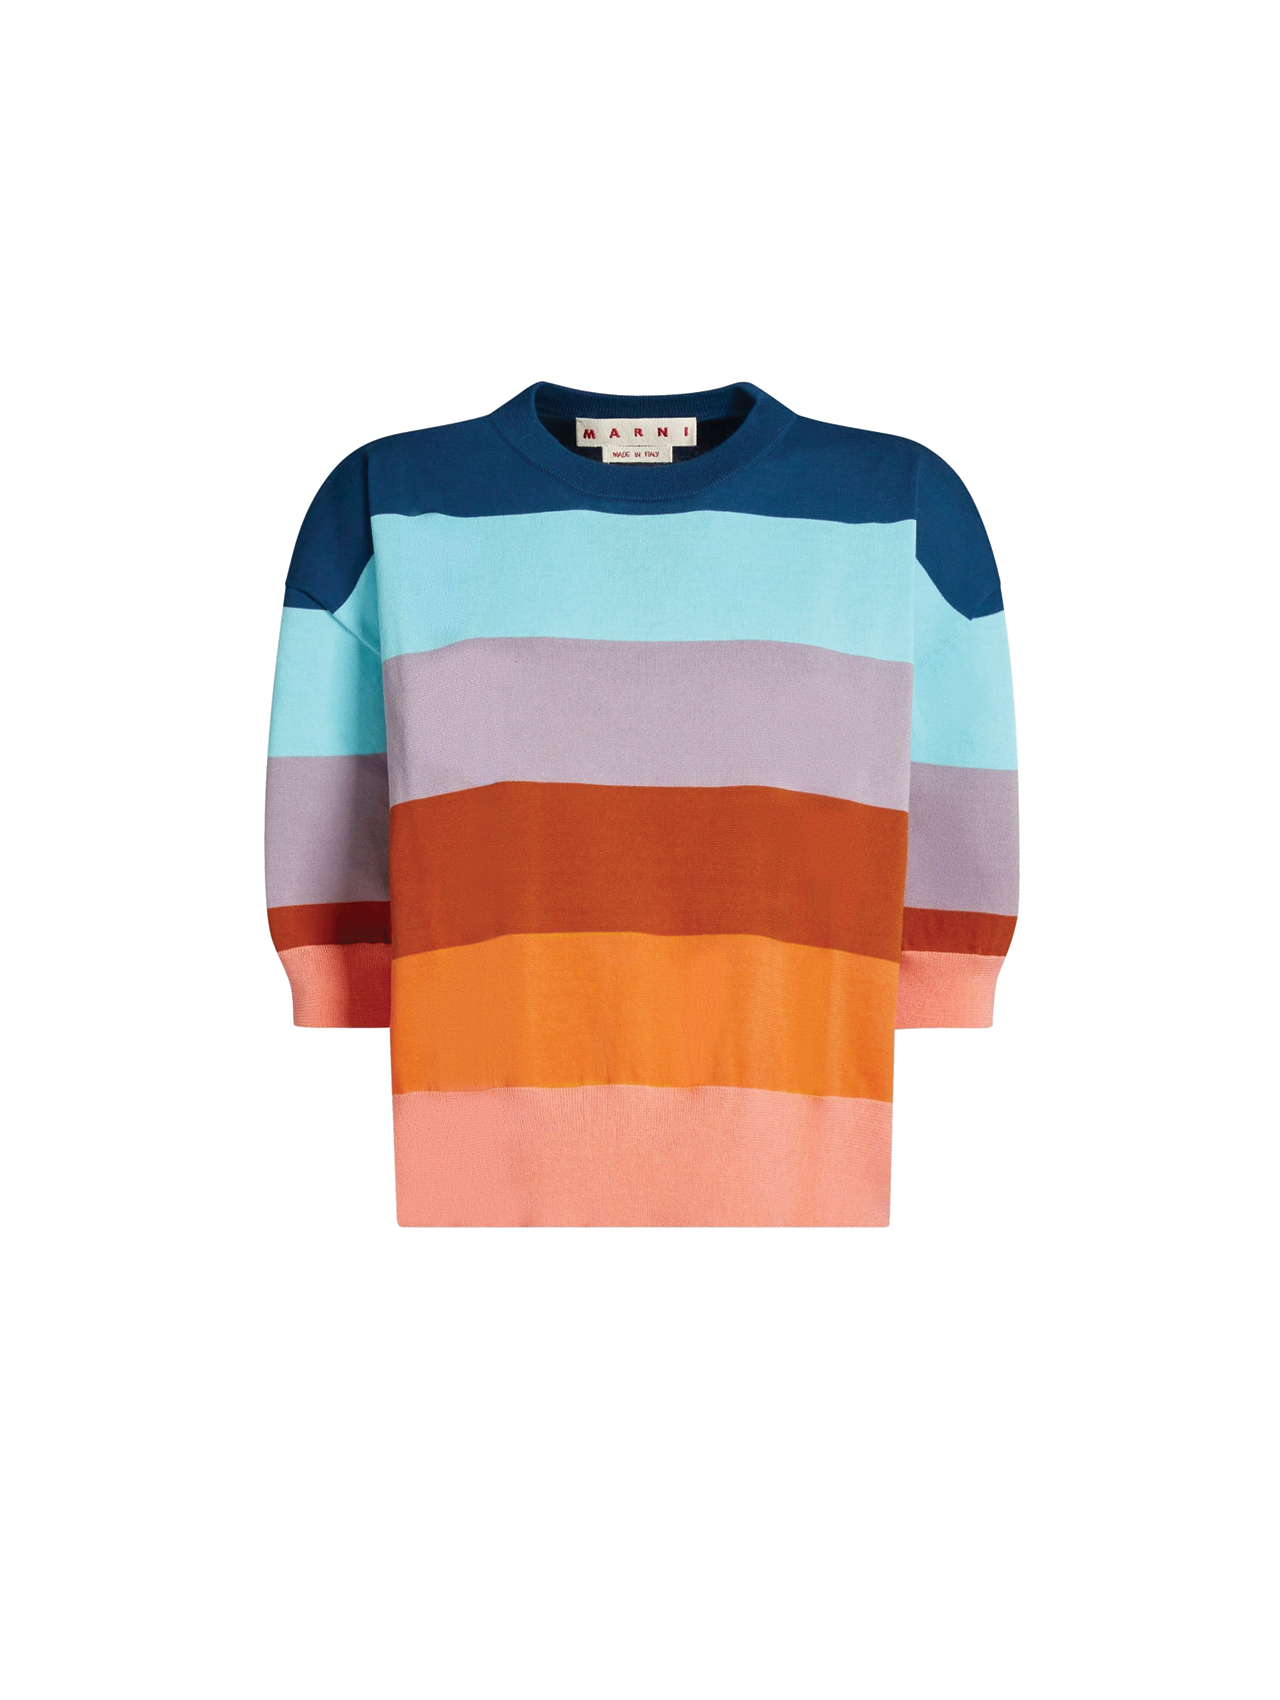 Marni Multicolour Knit Top